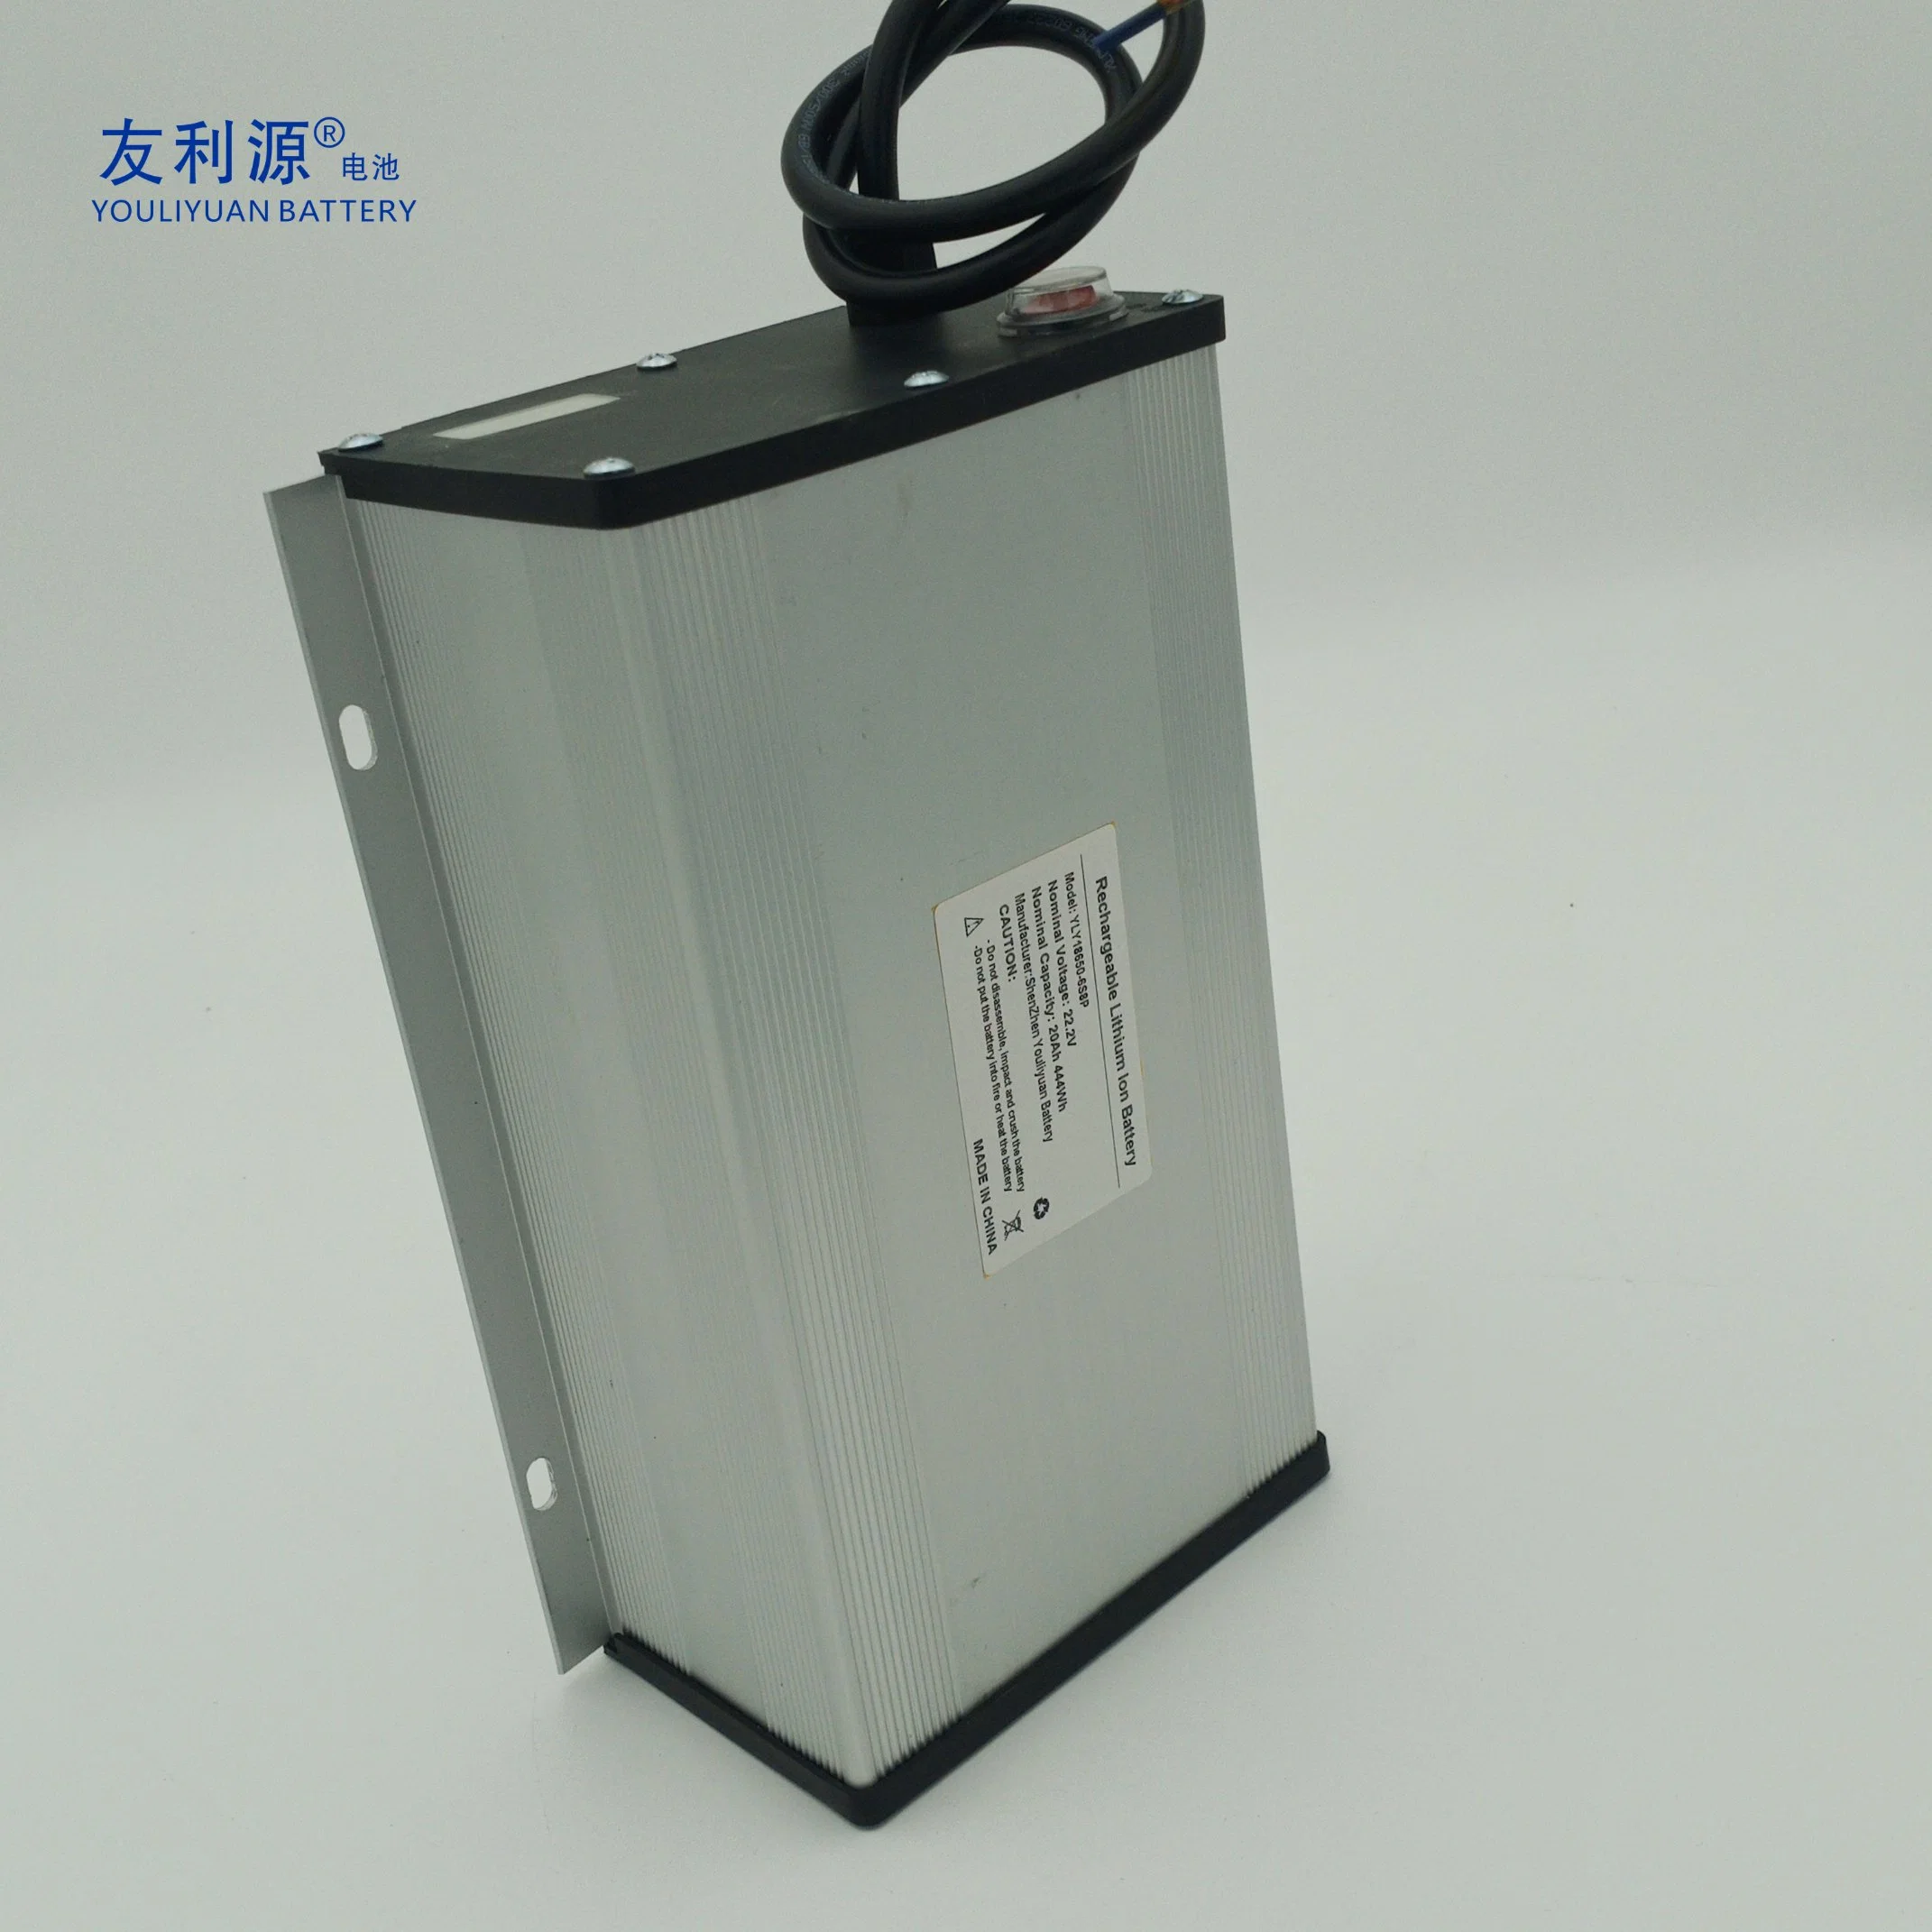 بطارية ليثيوم أيون عالية الطاقة من مصنع OBM Shenzhen مجموعة بطارية ليثيوم أيون 6s8p 18650 22-20 أمبير/الساعة مع مبيت من الألومنيوم للإضاءة الشمسية